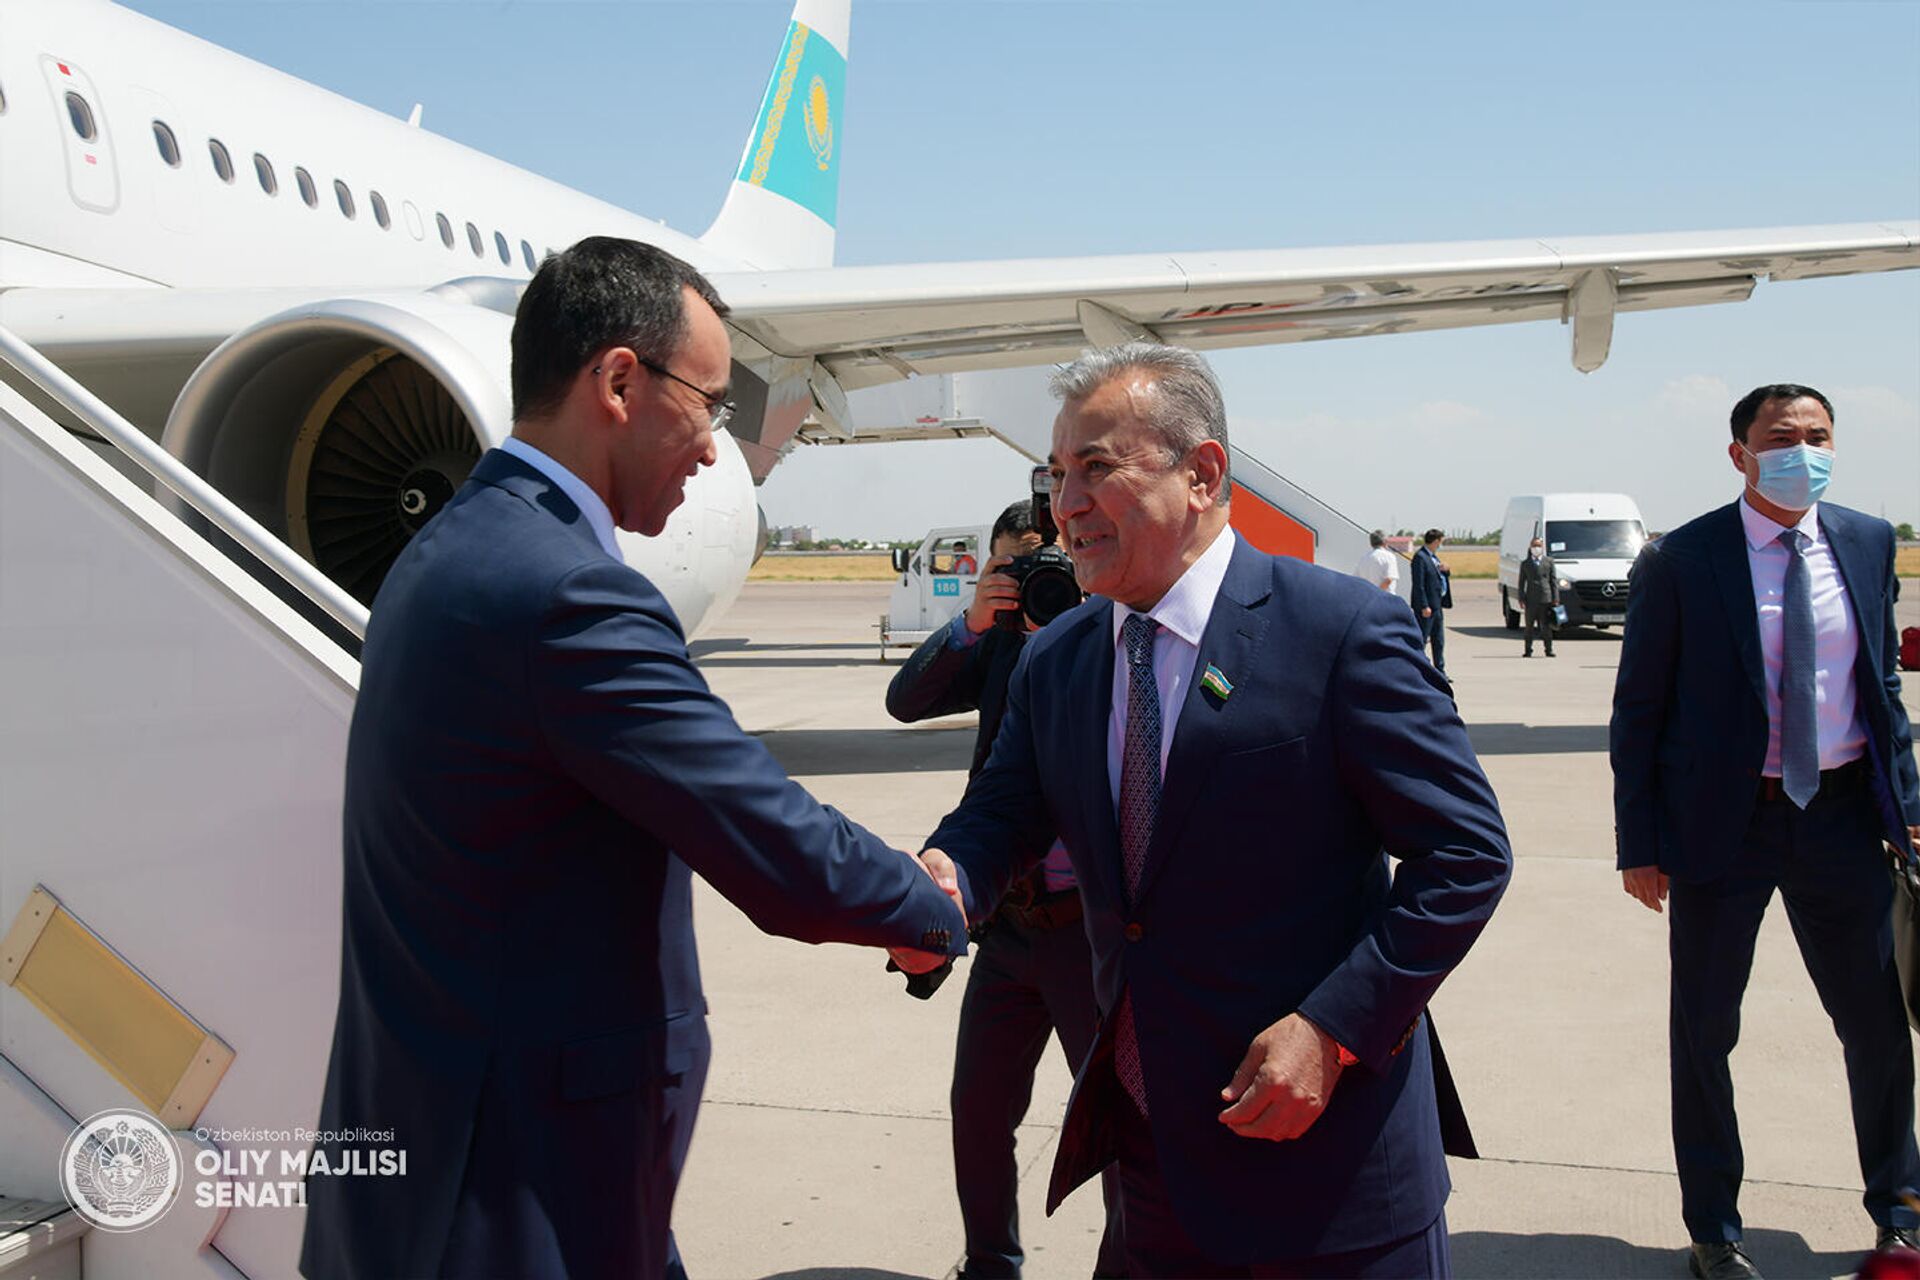 Председатель Сената Парламента Республики Казахстан Маулен Ашимбаев прибыл с официальным визитом в Ташкент - Sputnik Ўзбекистон, 1920, 03.06.2021